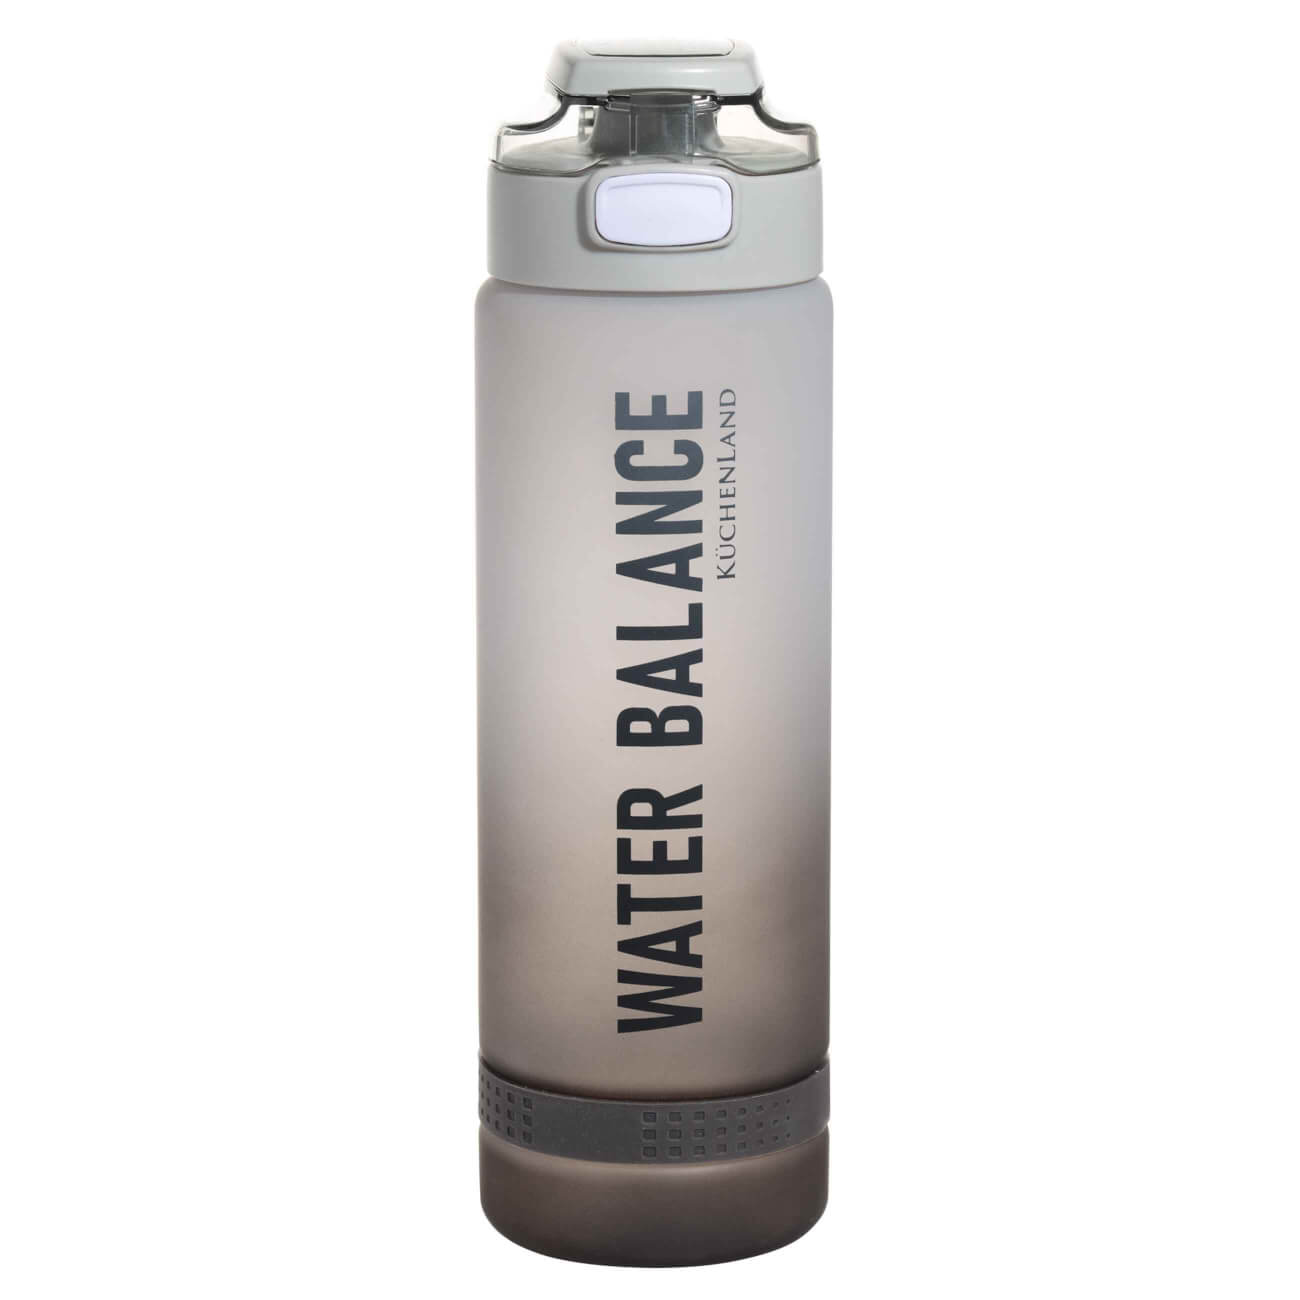 Бутылка для воды, 1 л, пластик/силикон, серая, Water balance, Sport бутылка для воды спорт 750 мл